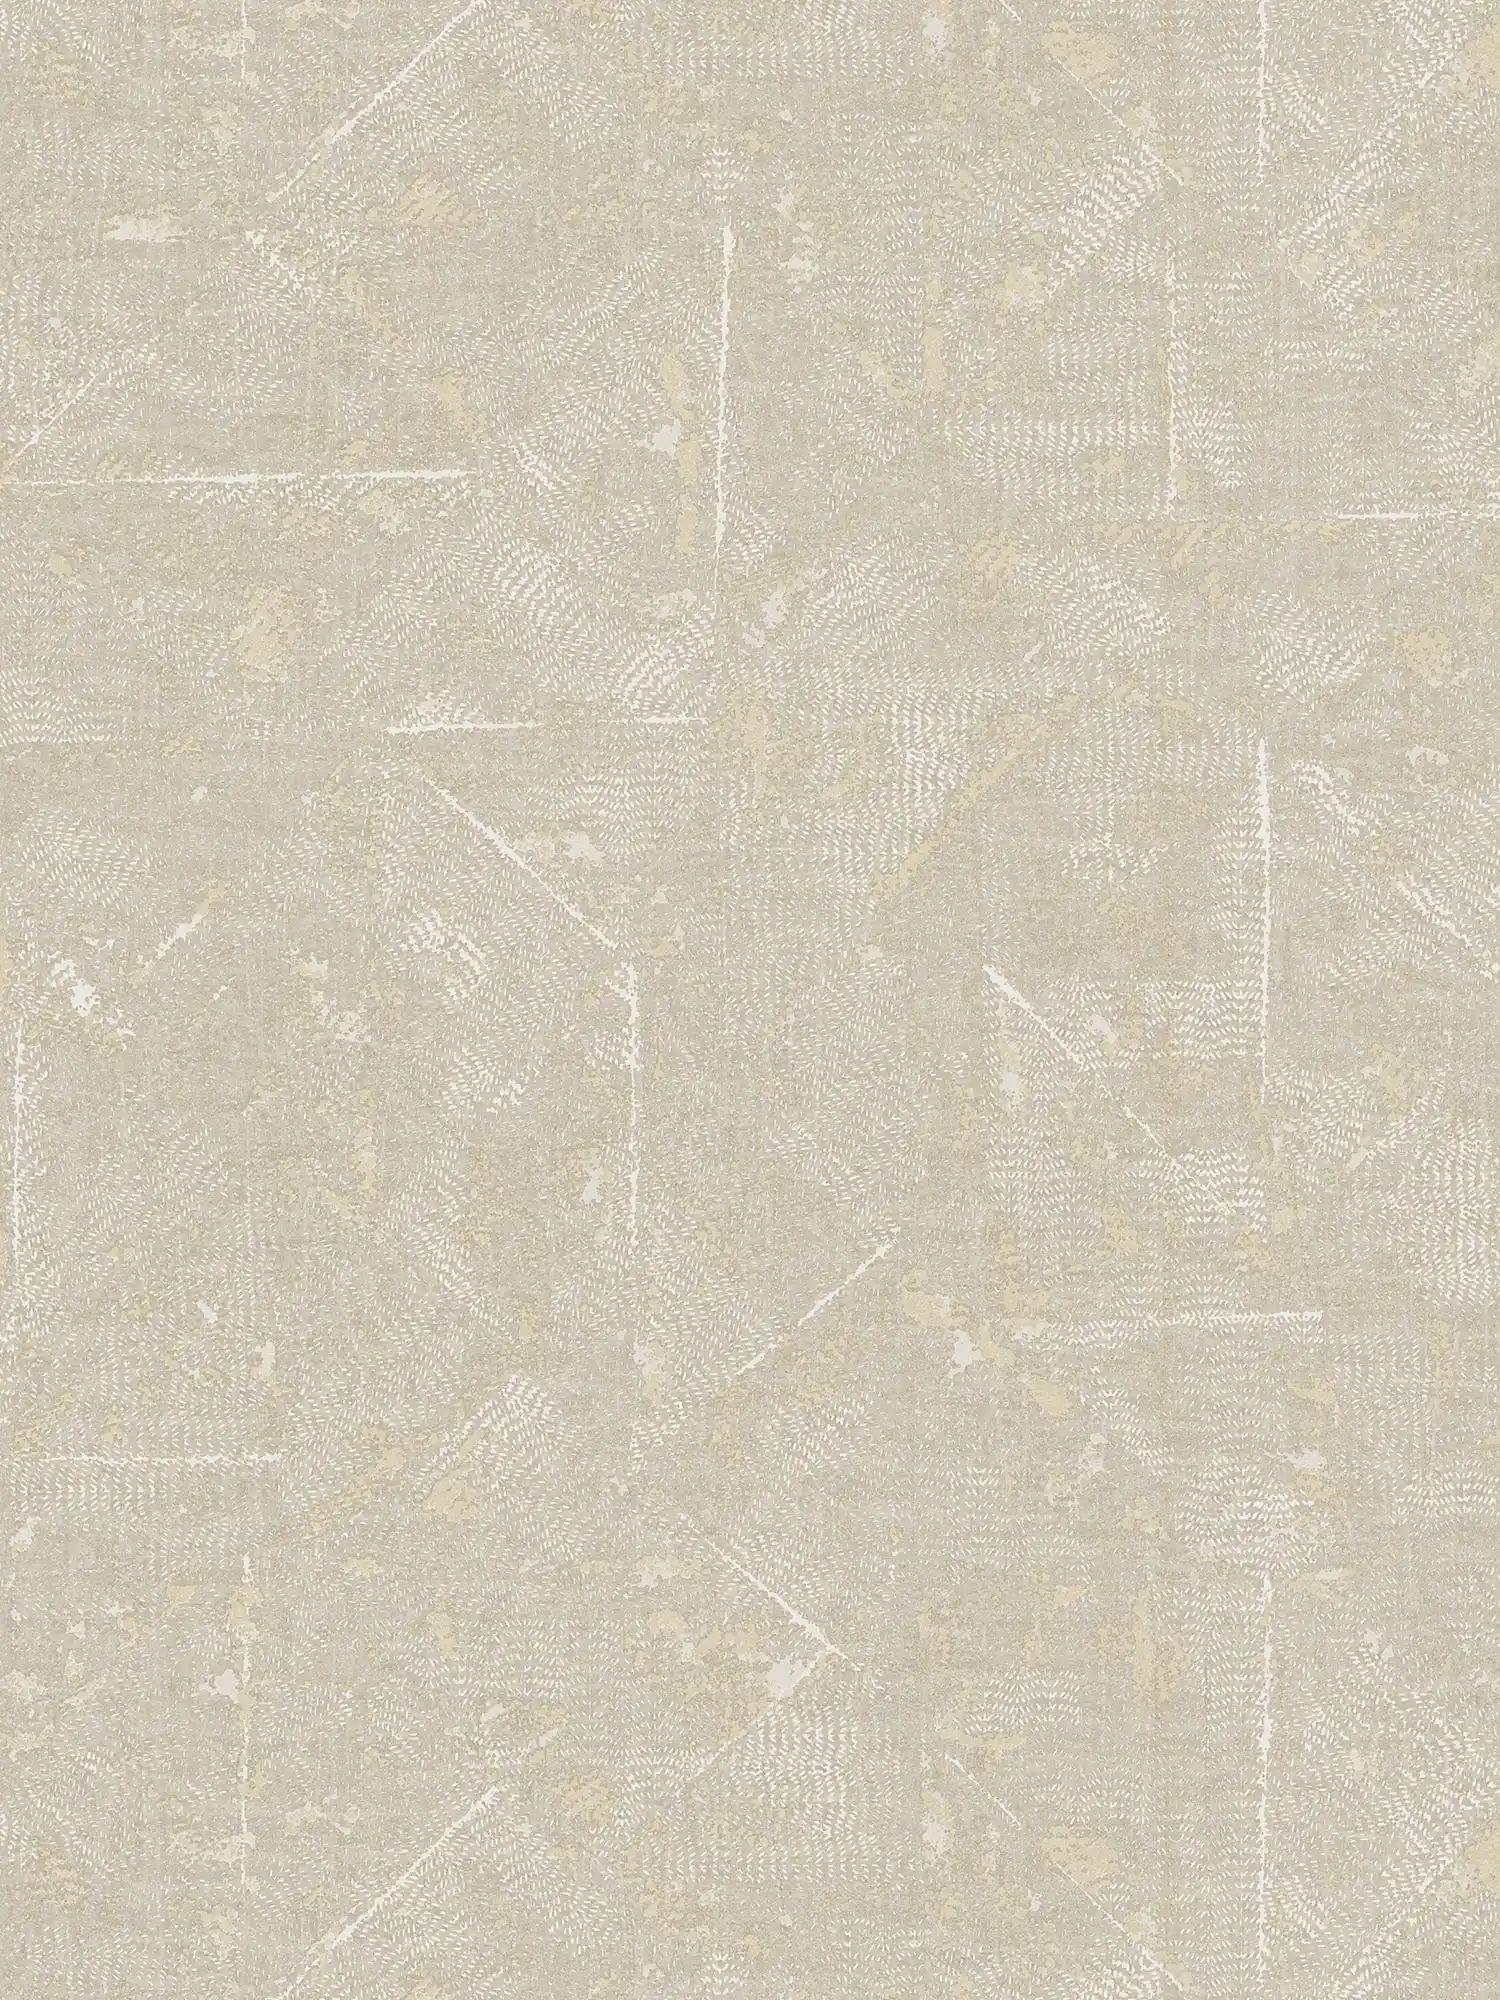 Papier peint beige à motifs avec accents argentés - gris, beige, argenté
